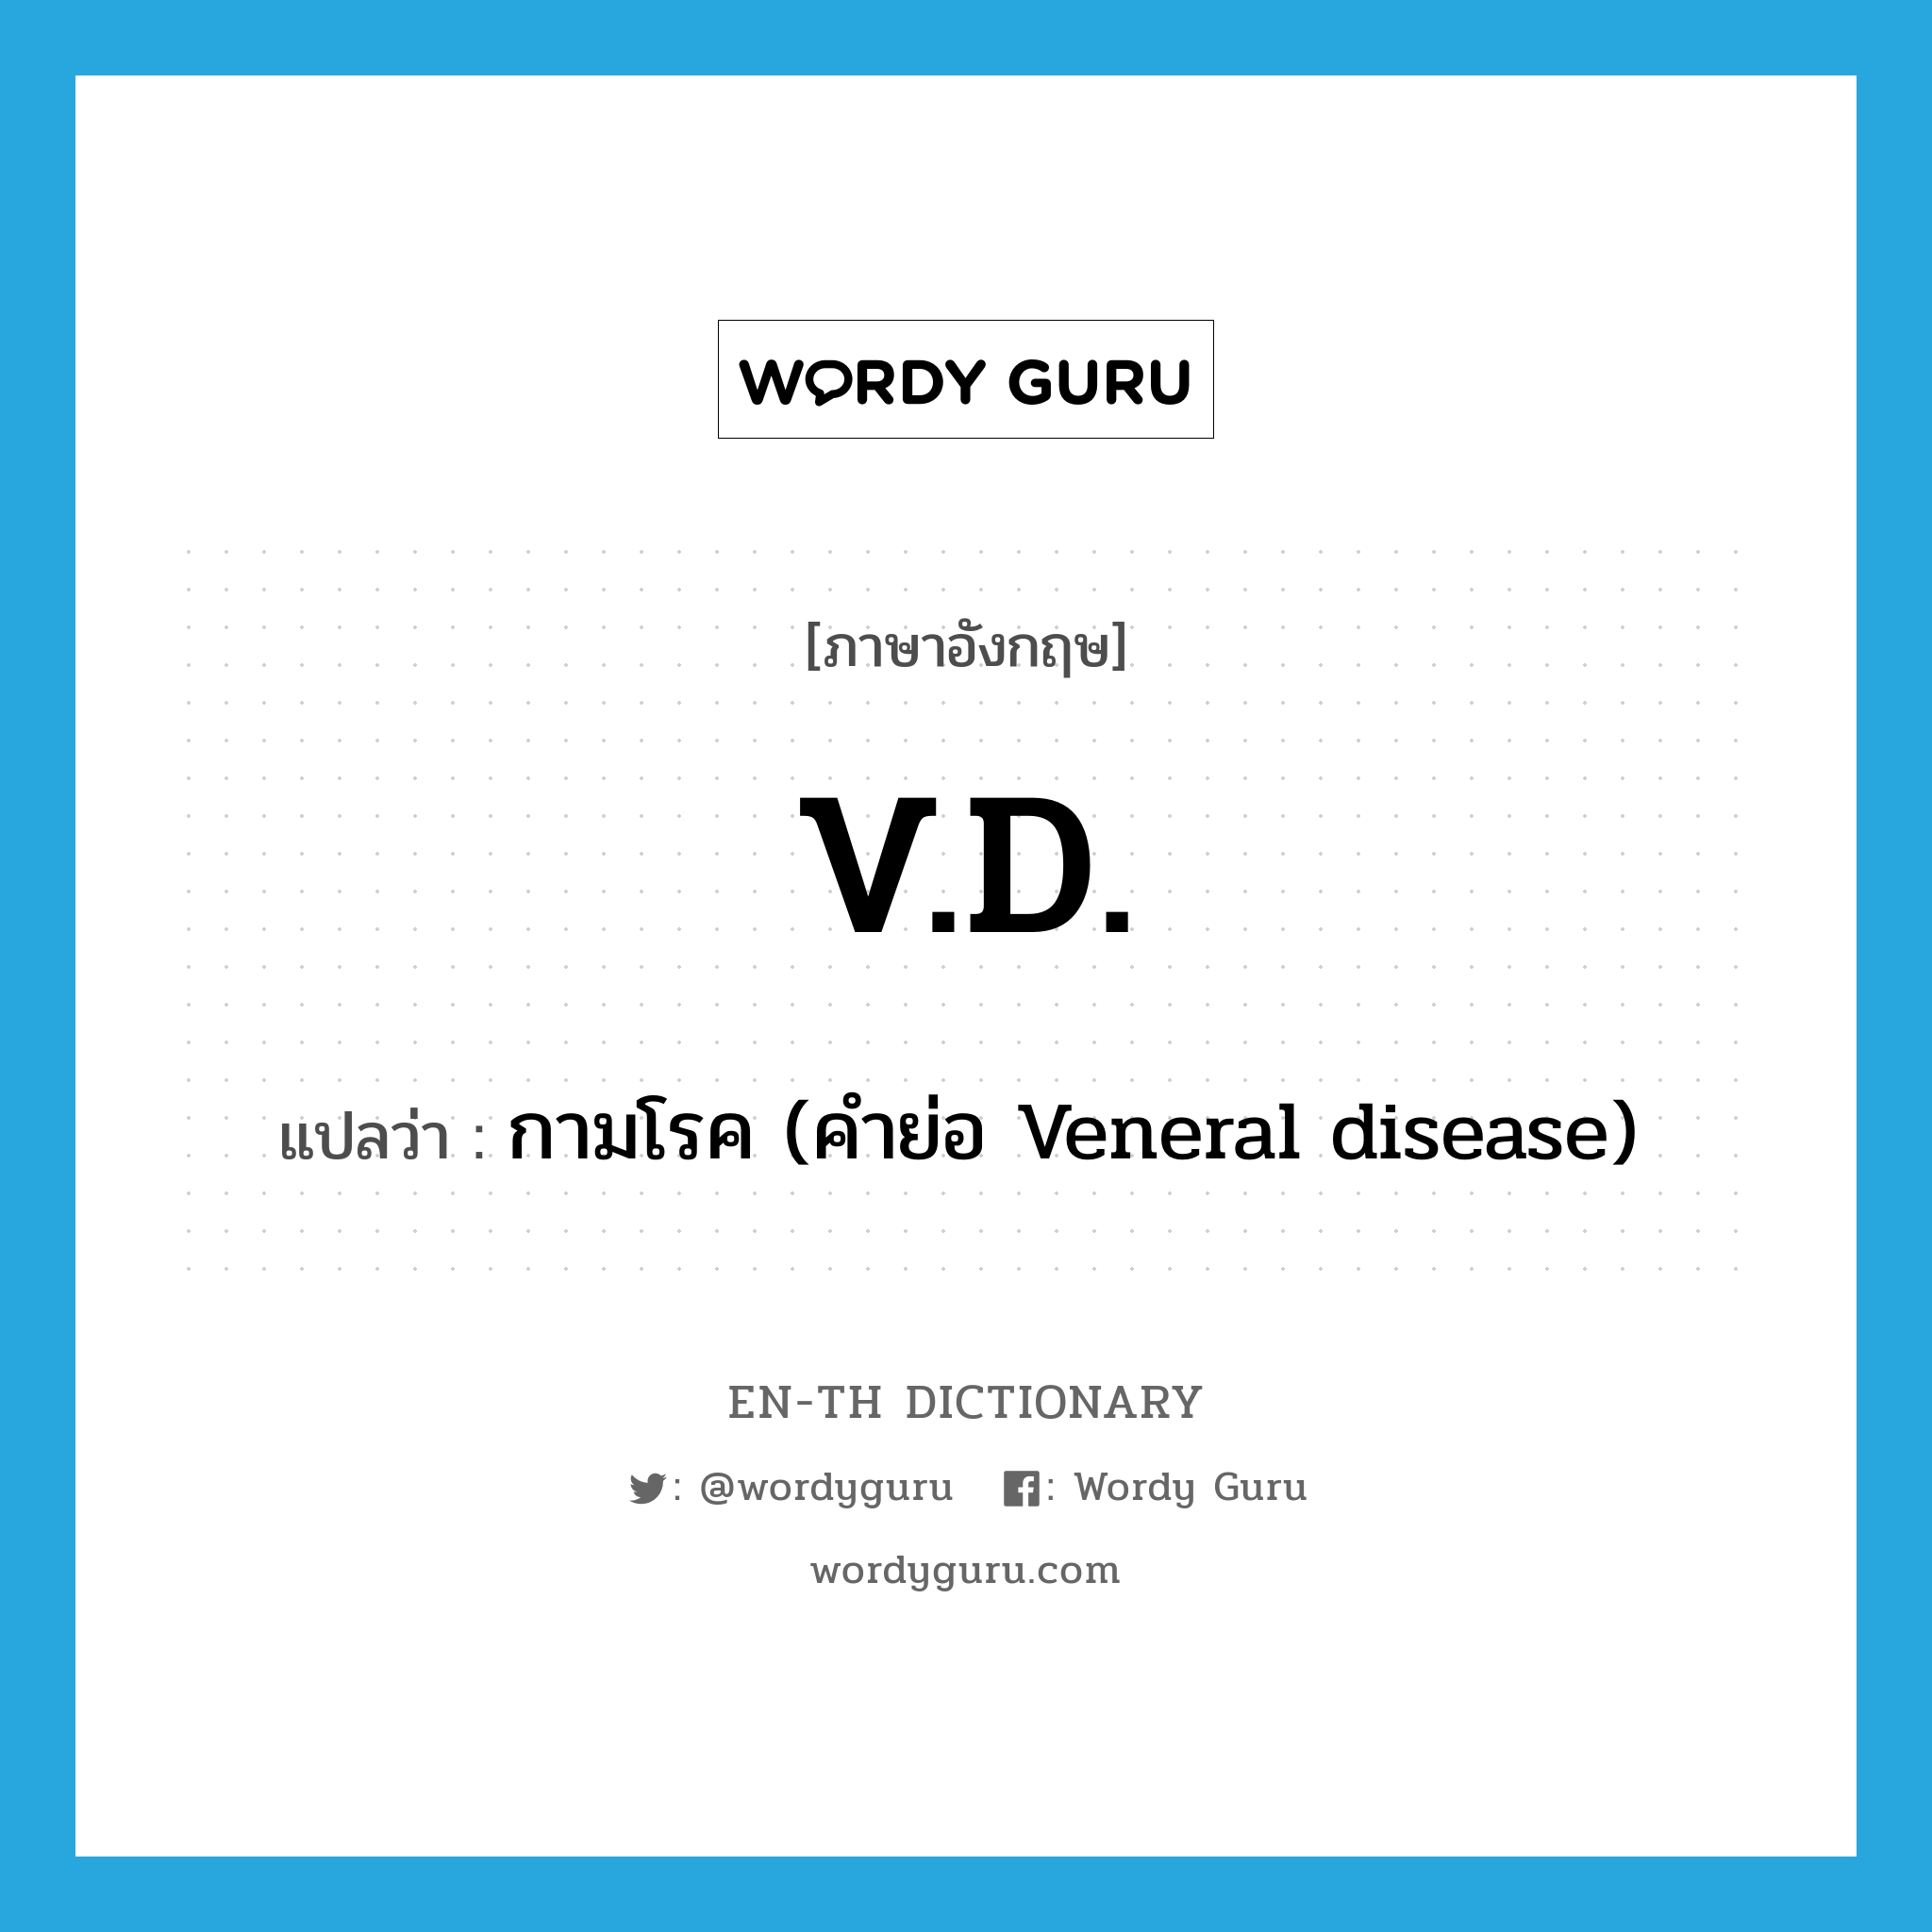 กามโรค (คำย่อ Veneral disease) ภาษาอังกฤษ?, คำศัพท์ภาษาอังกฤษ กามโรค (คำย่อ Veneral disease) แปลว่า V.D. ประเภท ABBR หมวด ABBR